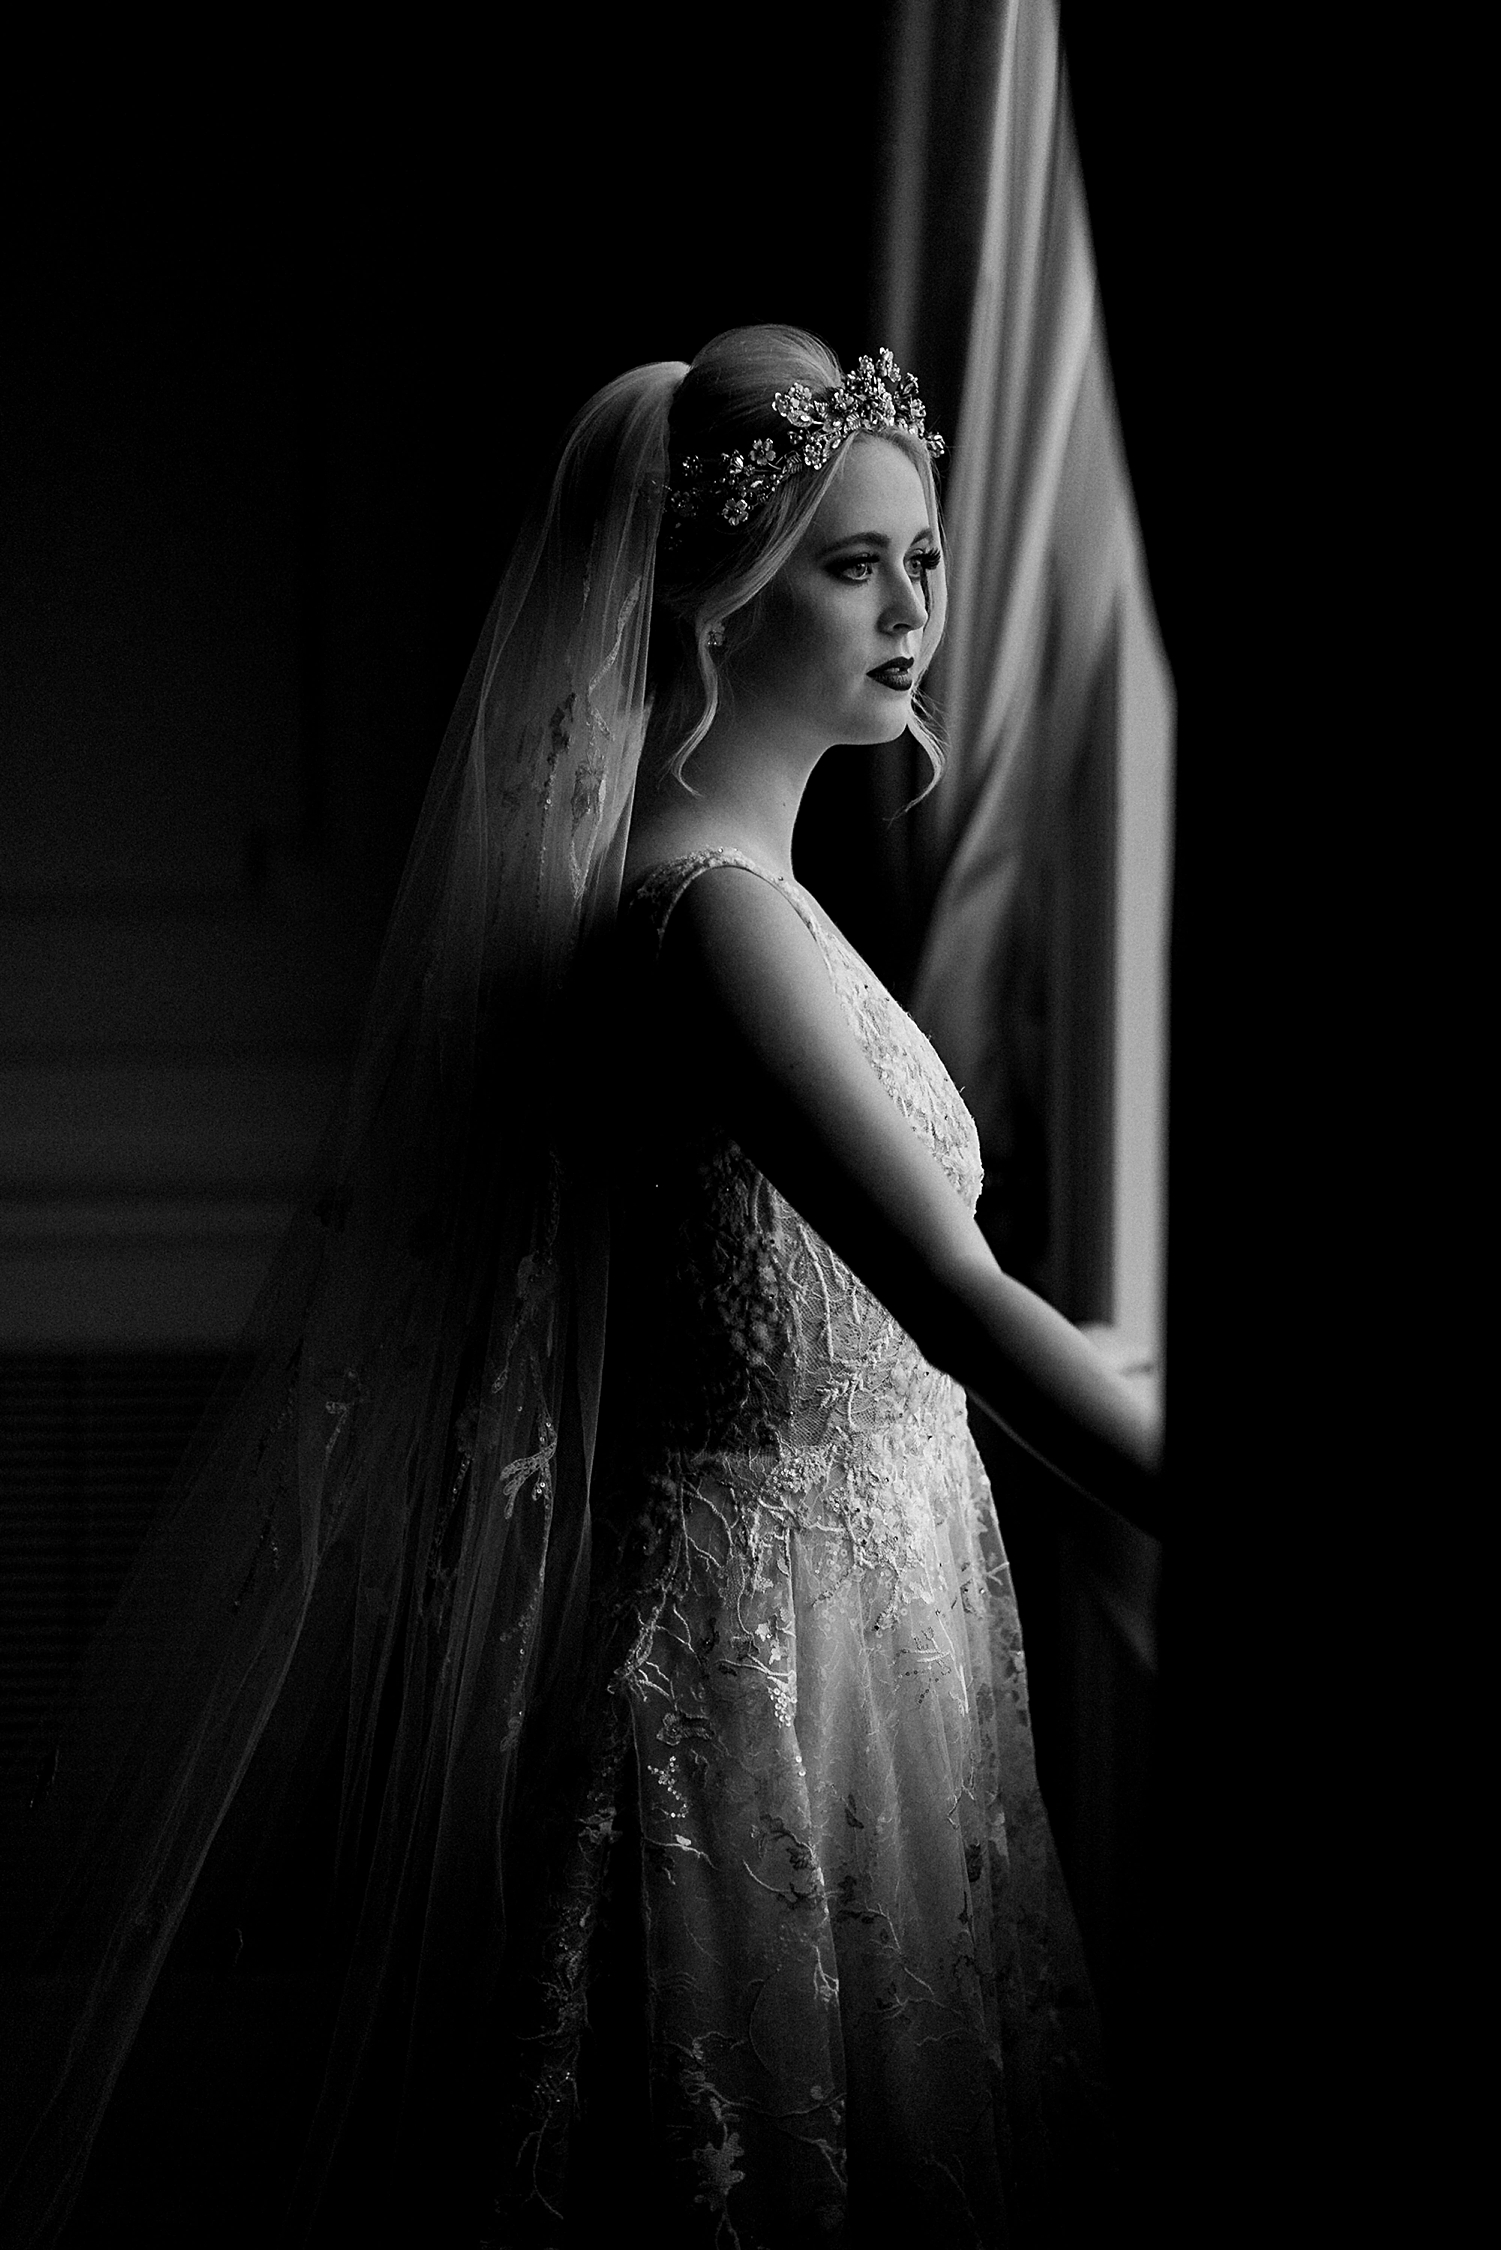 bride in wedding dress, crown, veil standing by window in dark room